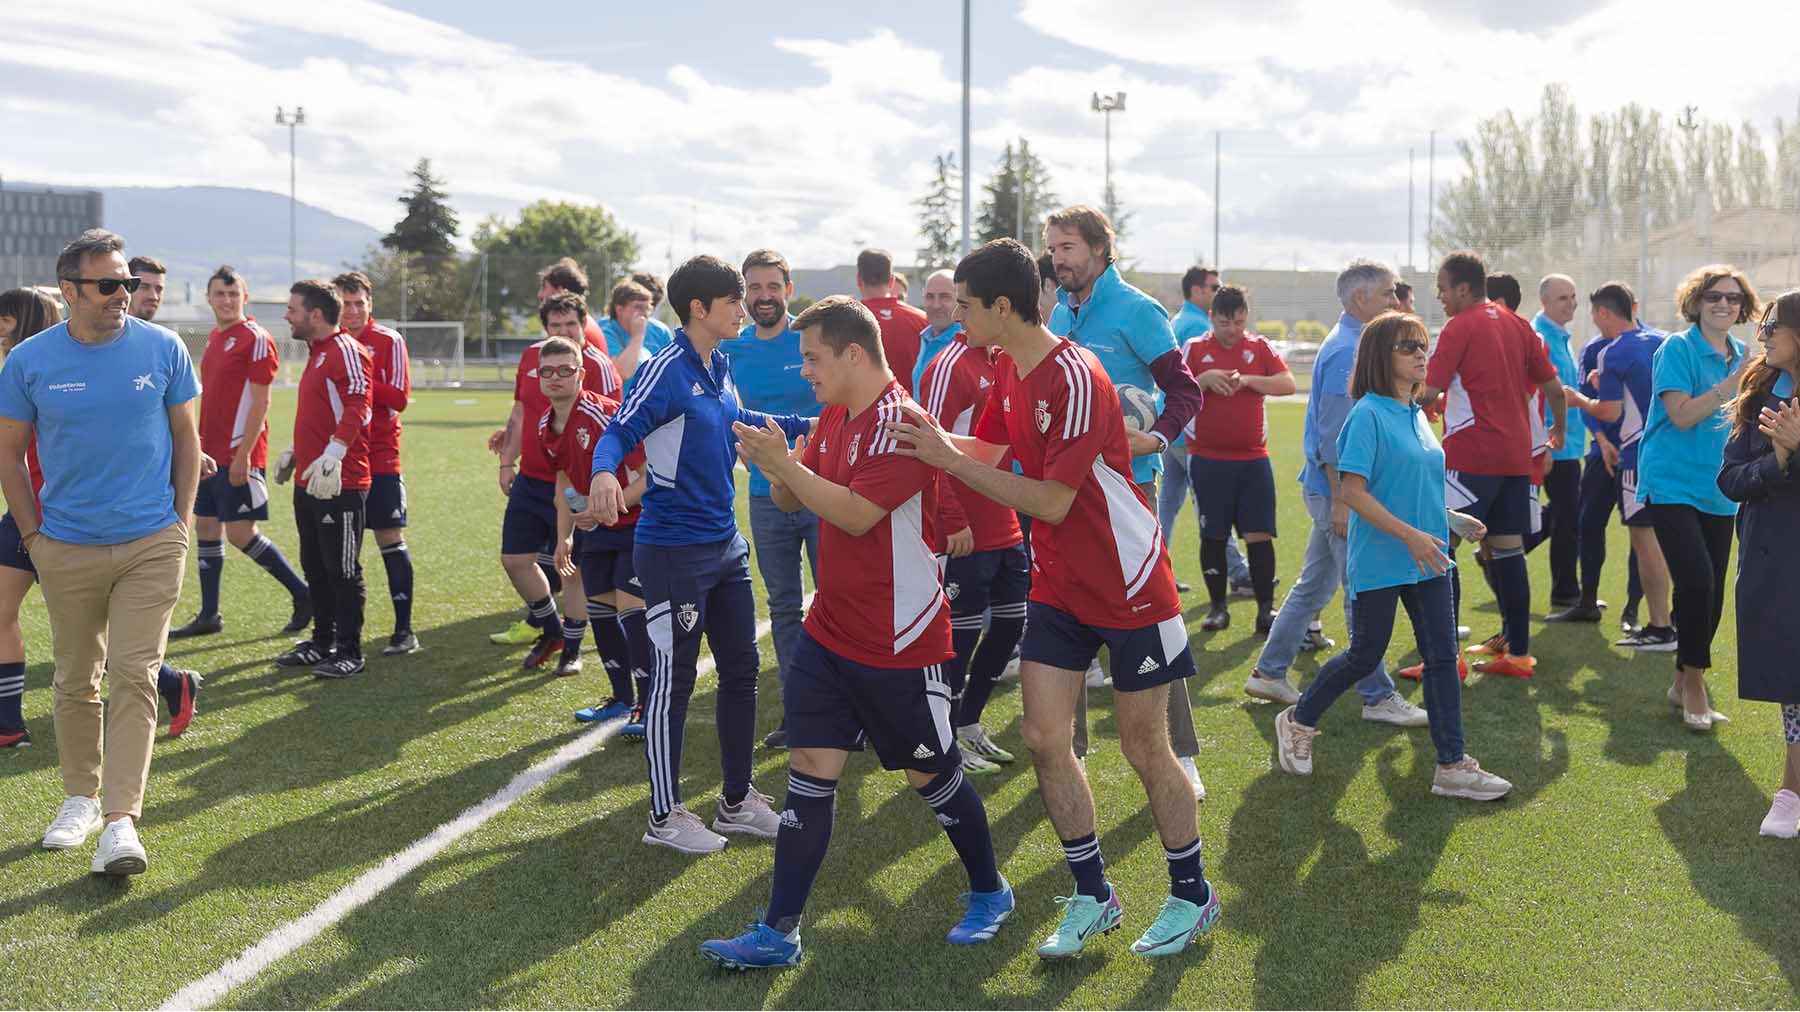 Voluntariado CaixaBank organiza una jornada de fútbol inclusivo junto a la Fundación Osasuna